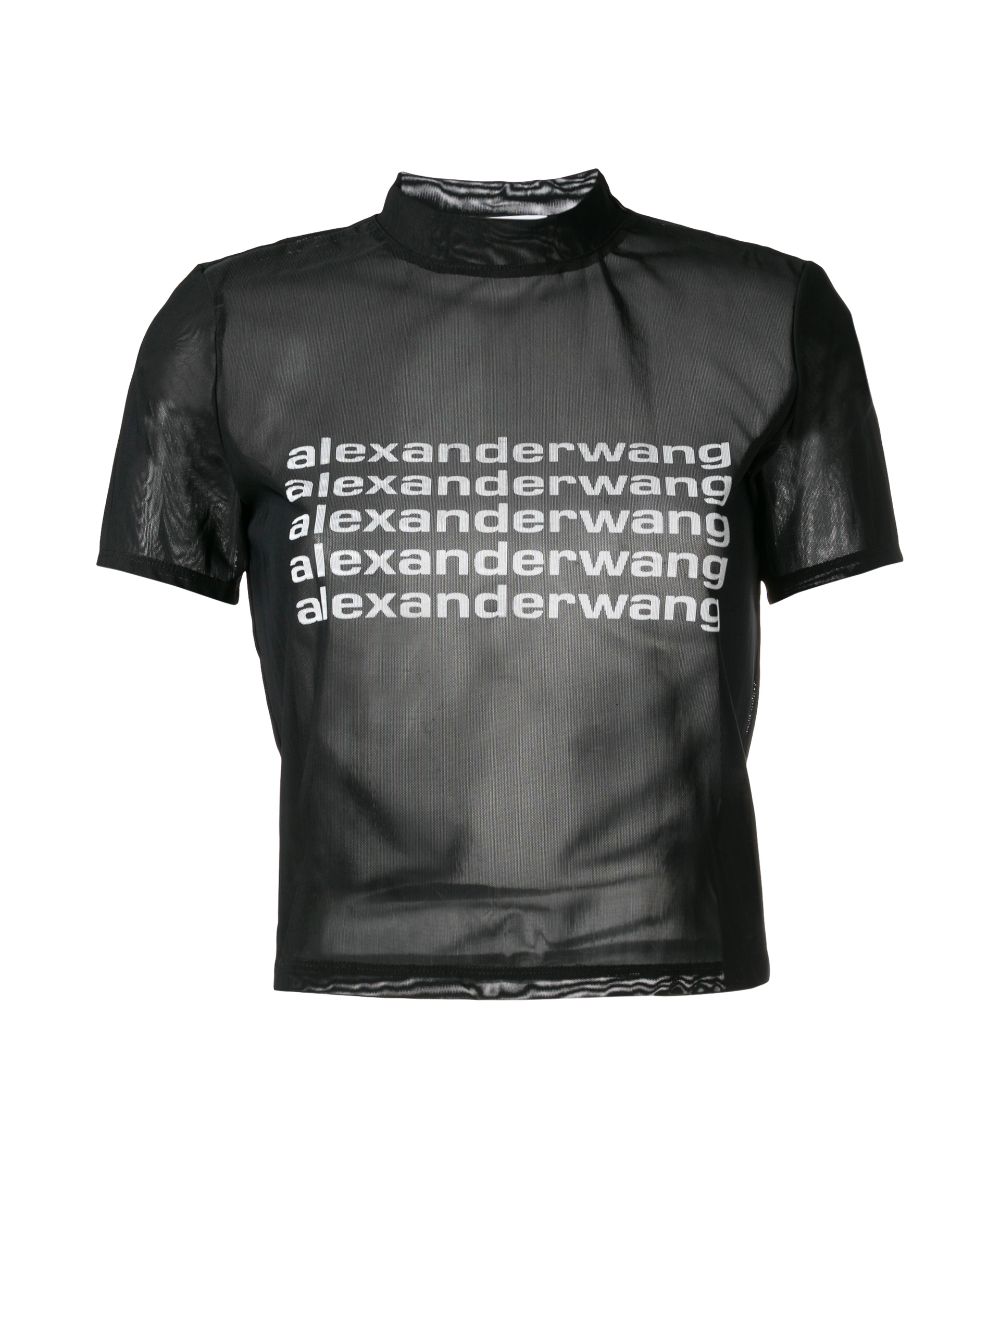 https://cdn-images.farfetch-contents.com/alexander-wang-logo-print-sheer-t-shirt_13600492_17059835_1000.jpg